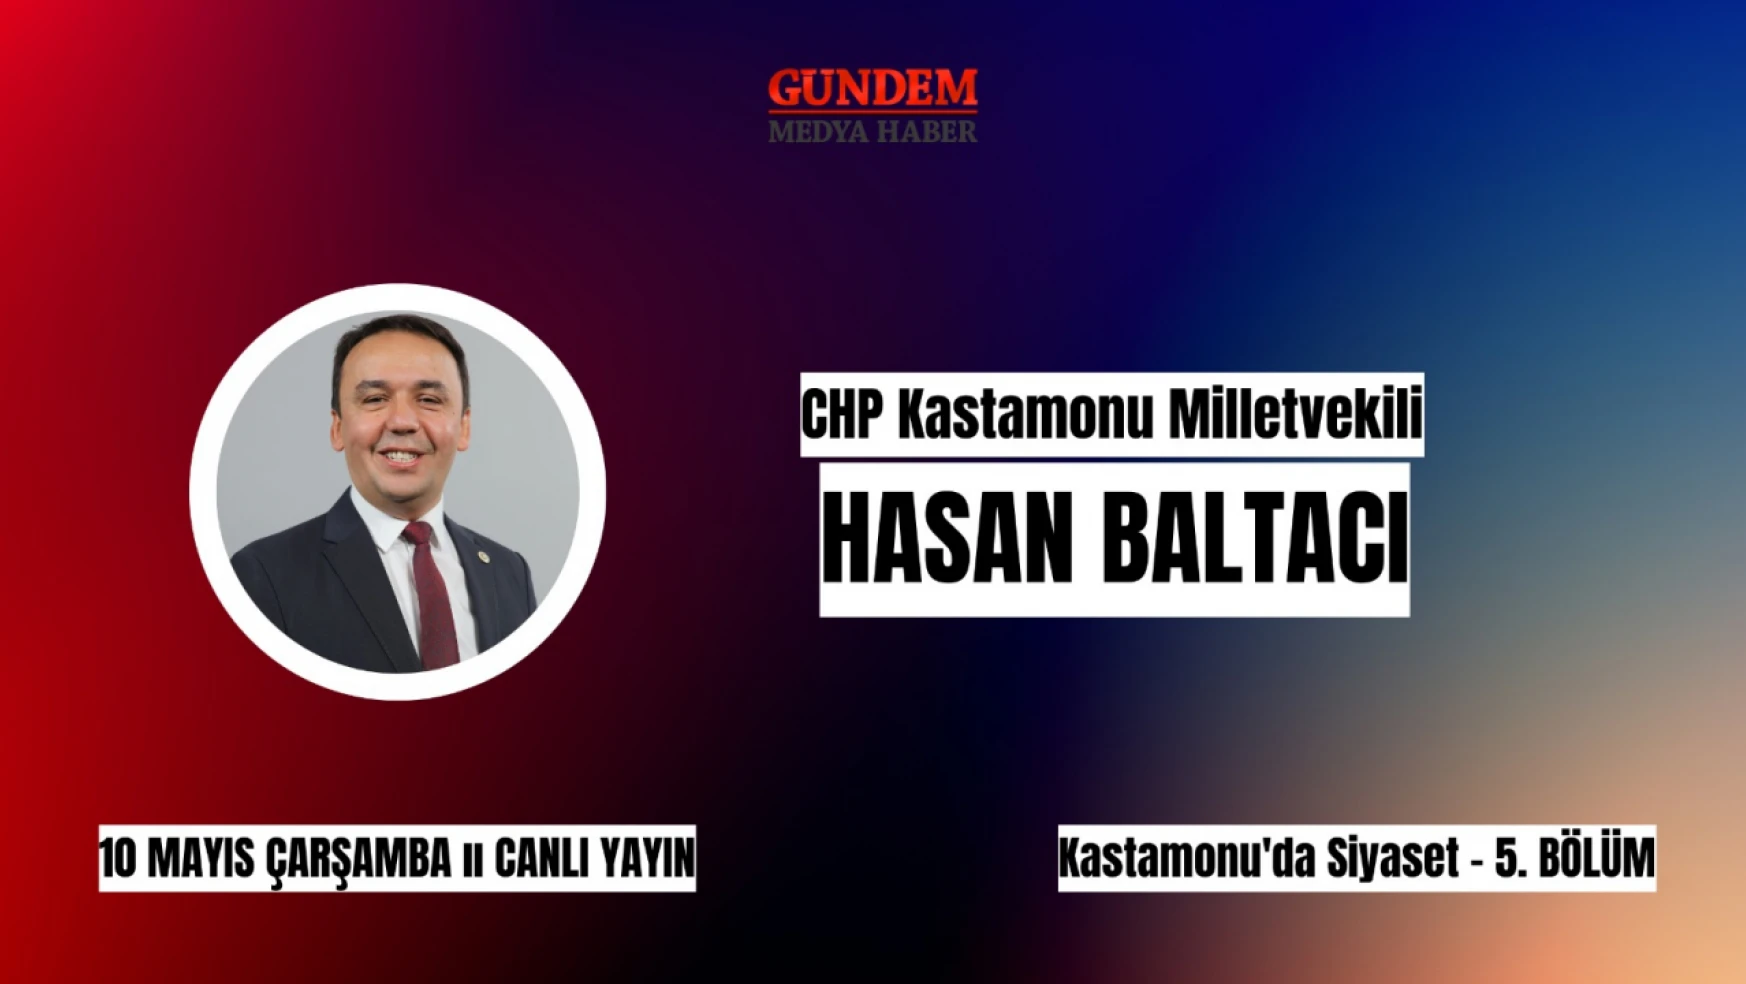 CHP Milletvekili Adayı Baltacı, Gündem Medya Haber'e konuk olacak